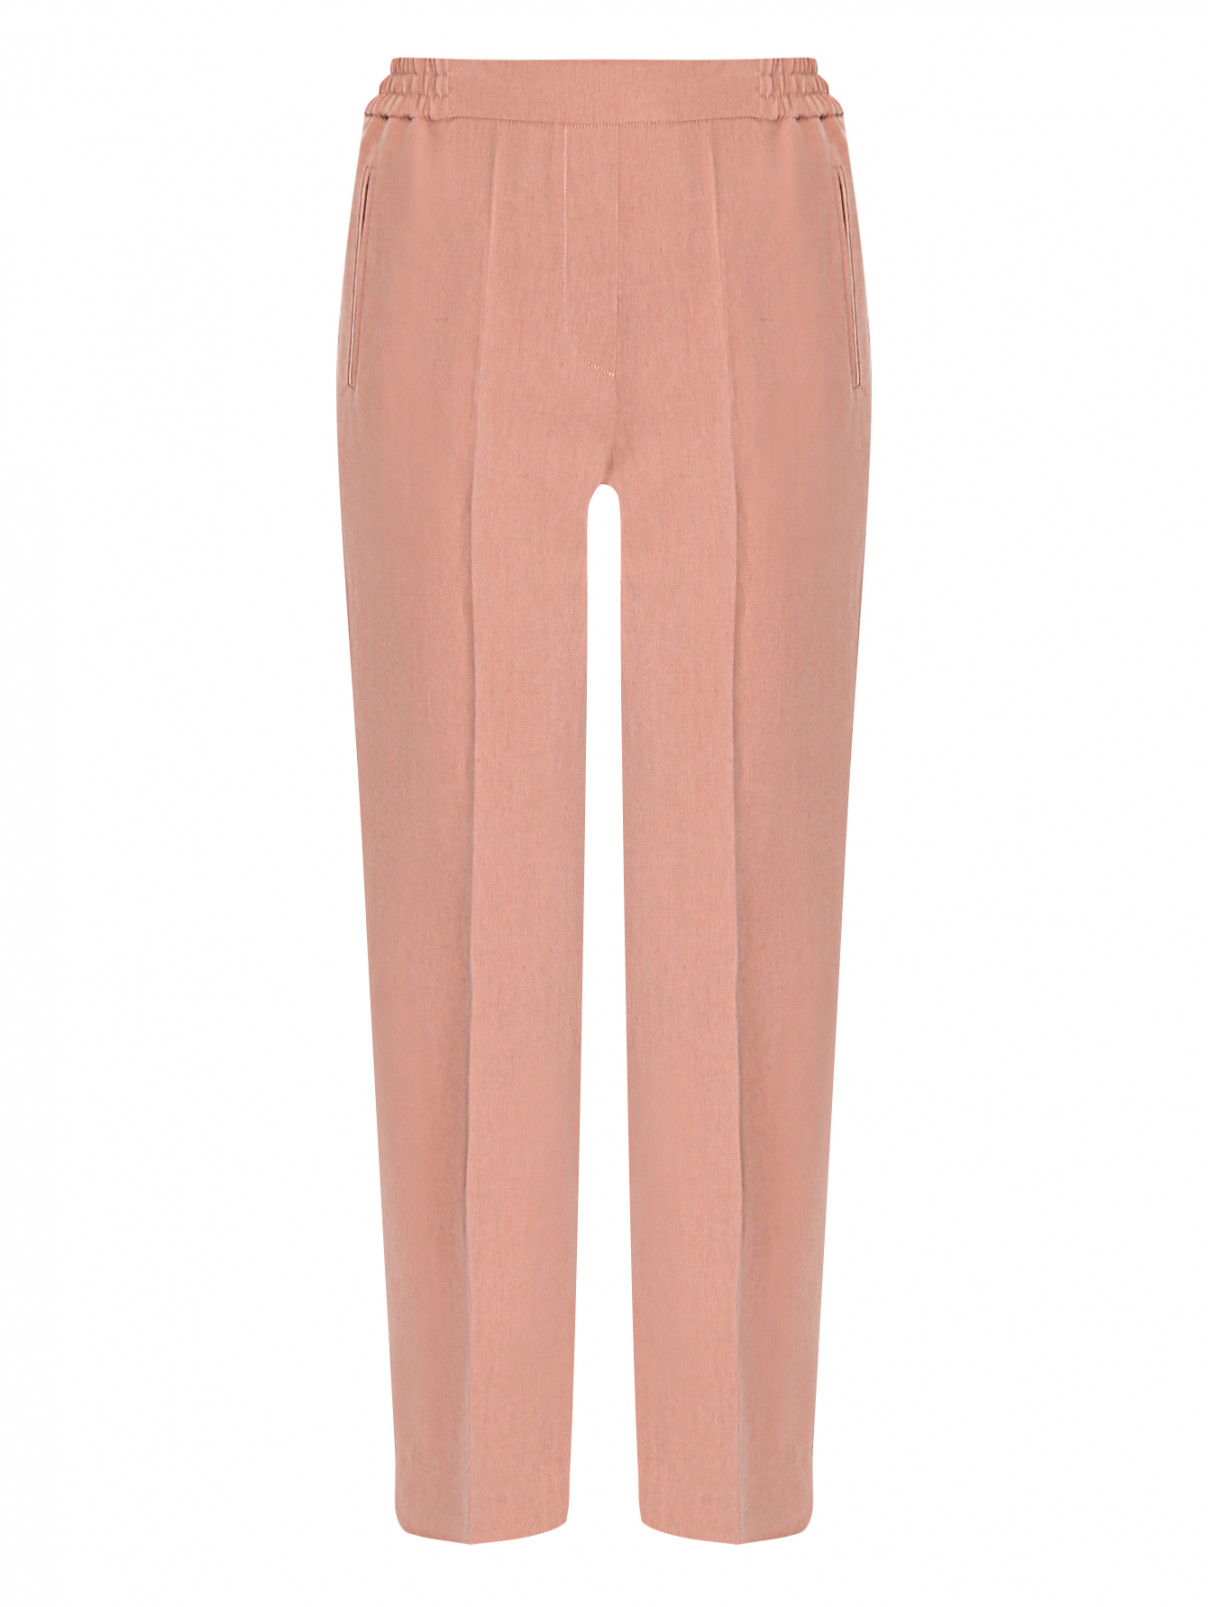 Укороченные брюки из шелка и льна на резинке Etro  –  Общий вид  – Цвет:  Розовый